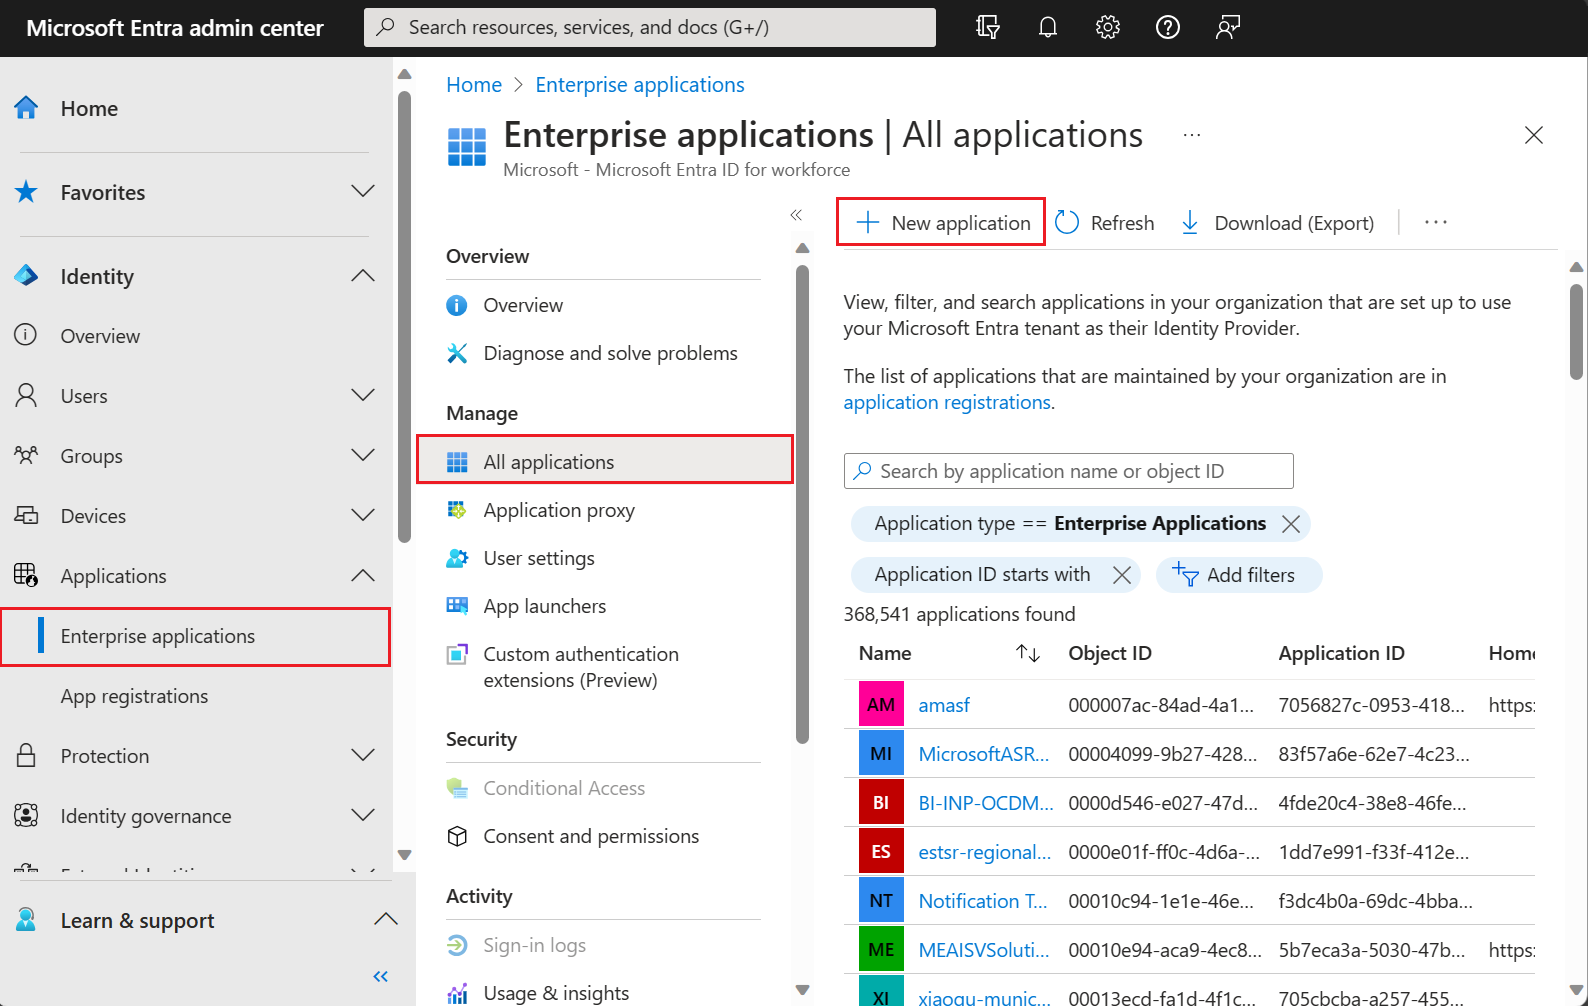 Captura de pantalla que muestra el panel galería de aplicaciones de Microsoft Entra en el [Centro de administración de Microsoft Entra](https://entra.microsoft.com).